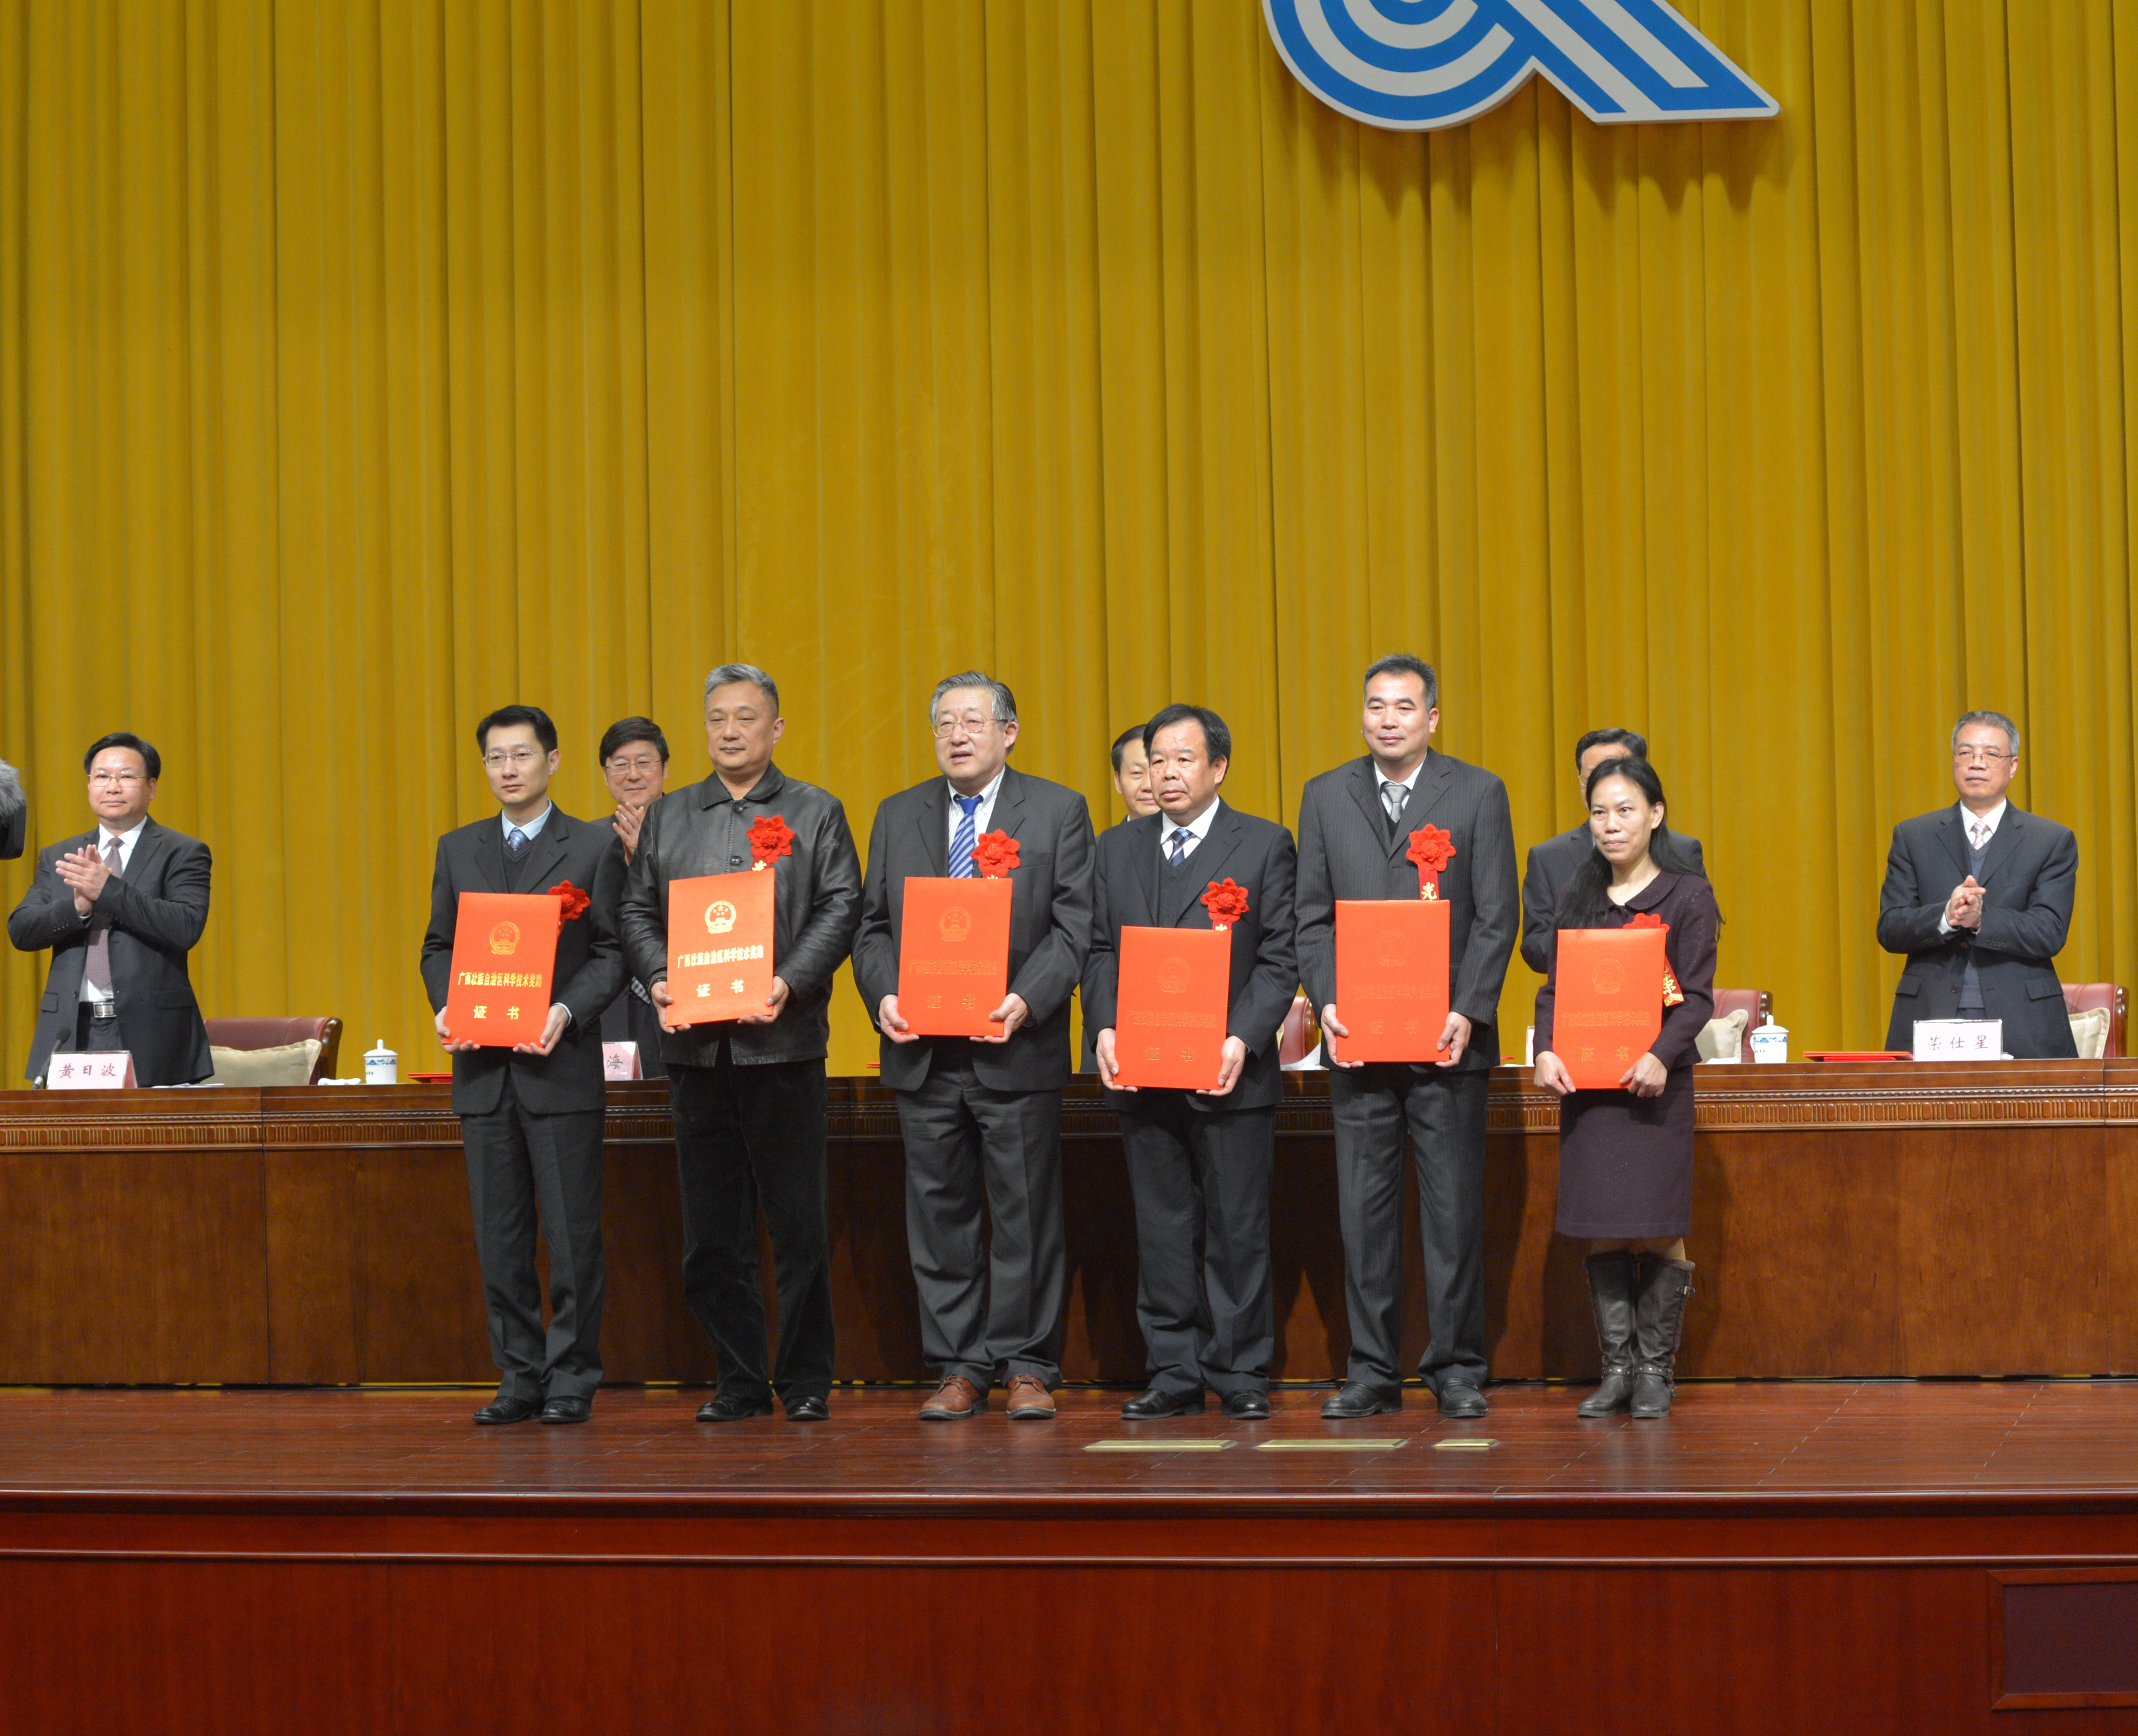 我校一项科研成果喜获2013年度广西自然科学奖一等奖